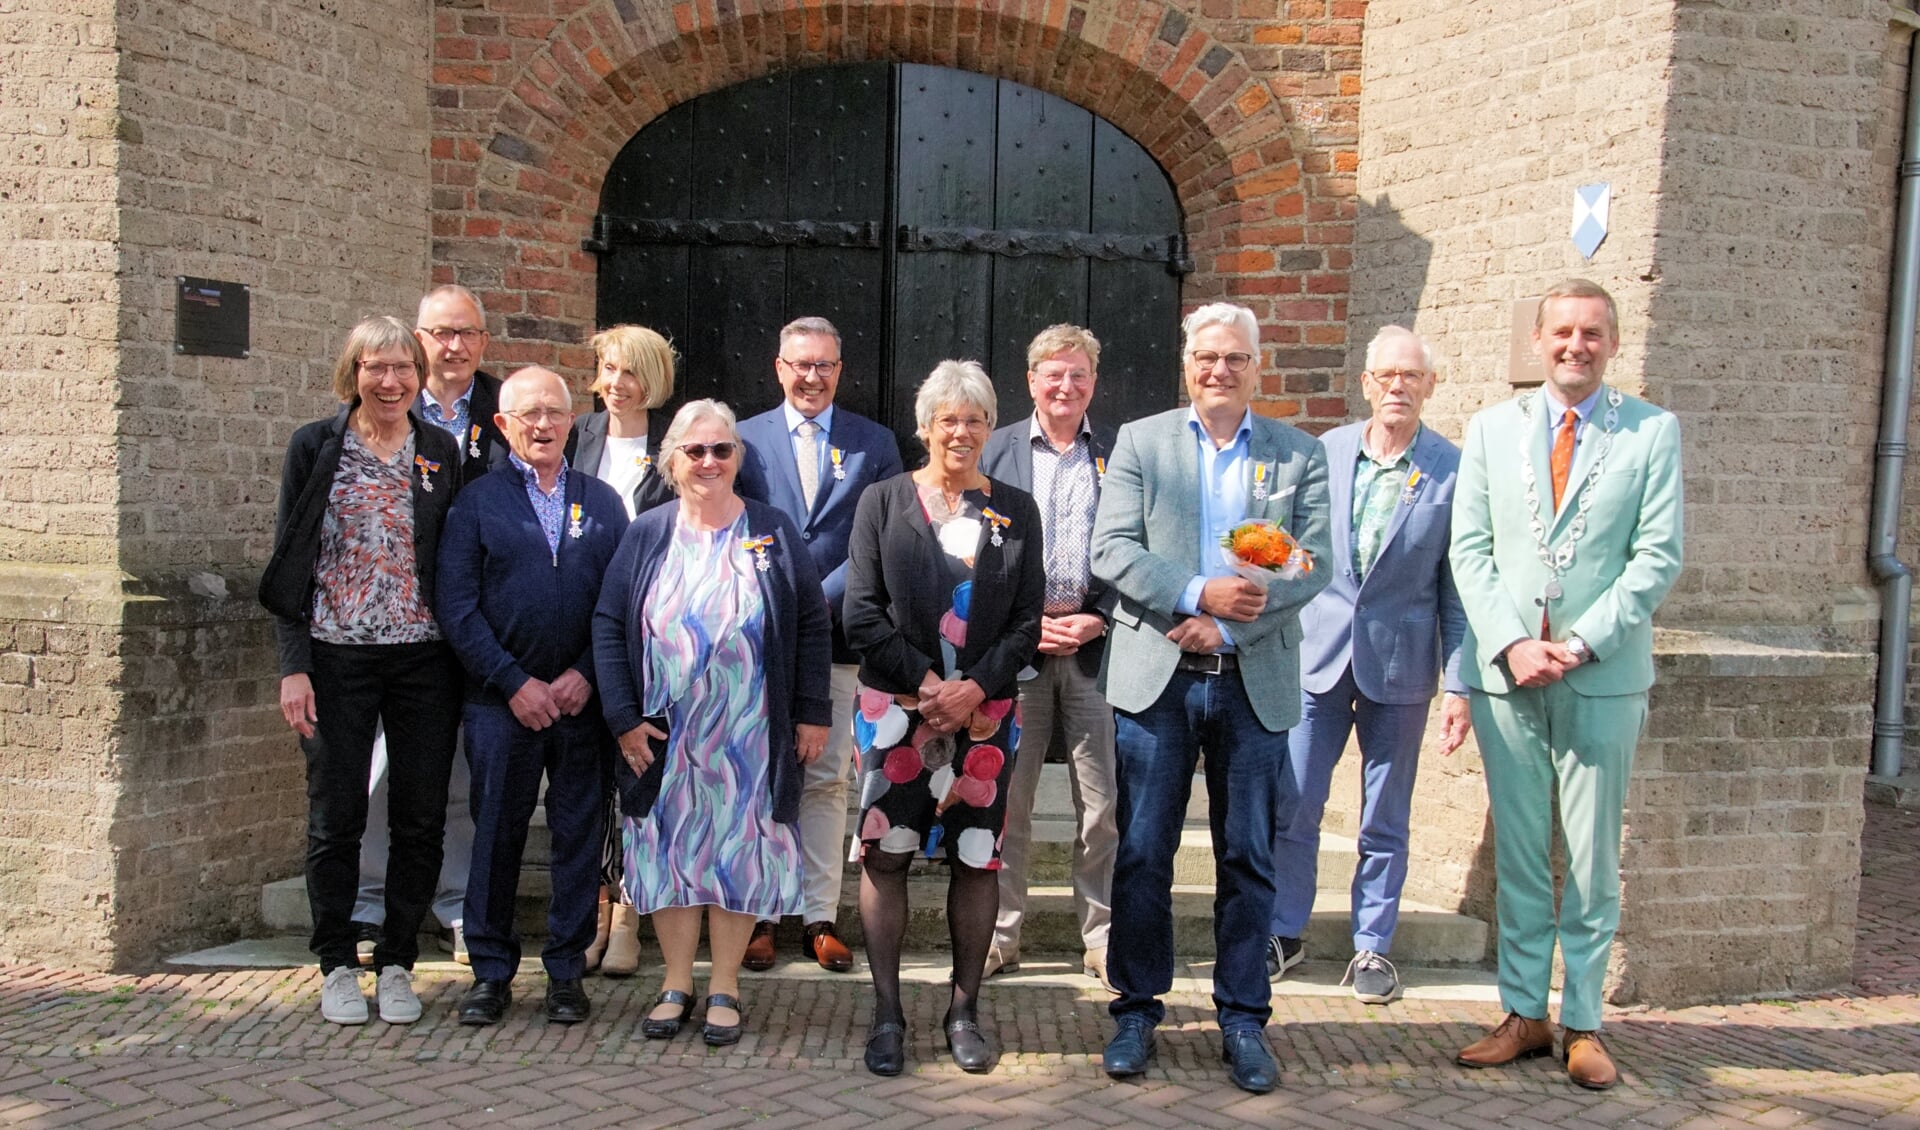 Decorandi van de gemeente Aalten met burgemeester Stapelkamp. Foto: Frank Vinkenvleugel